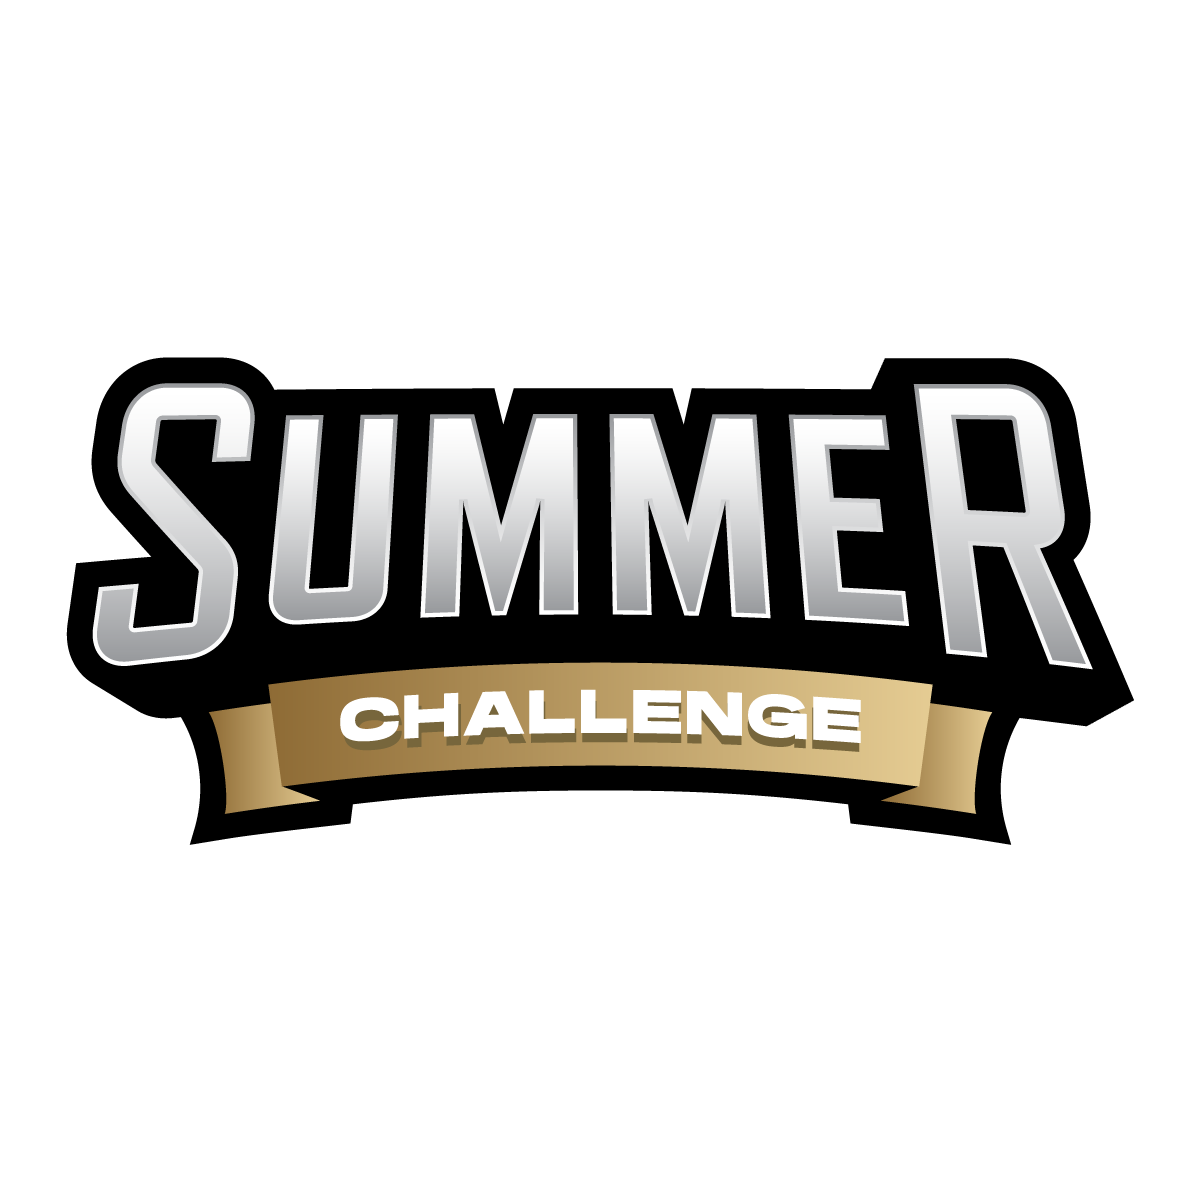 SUMMER_CHALLENGE_LOGO